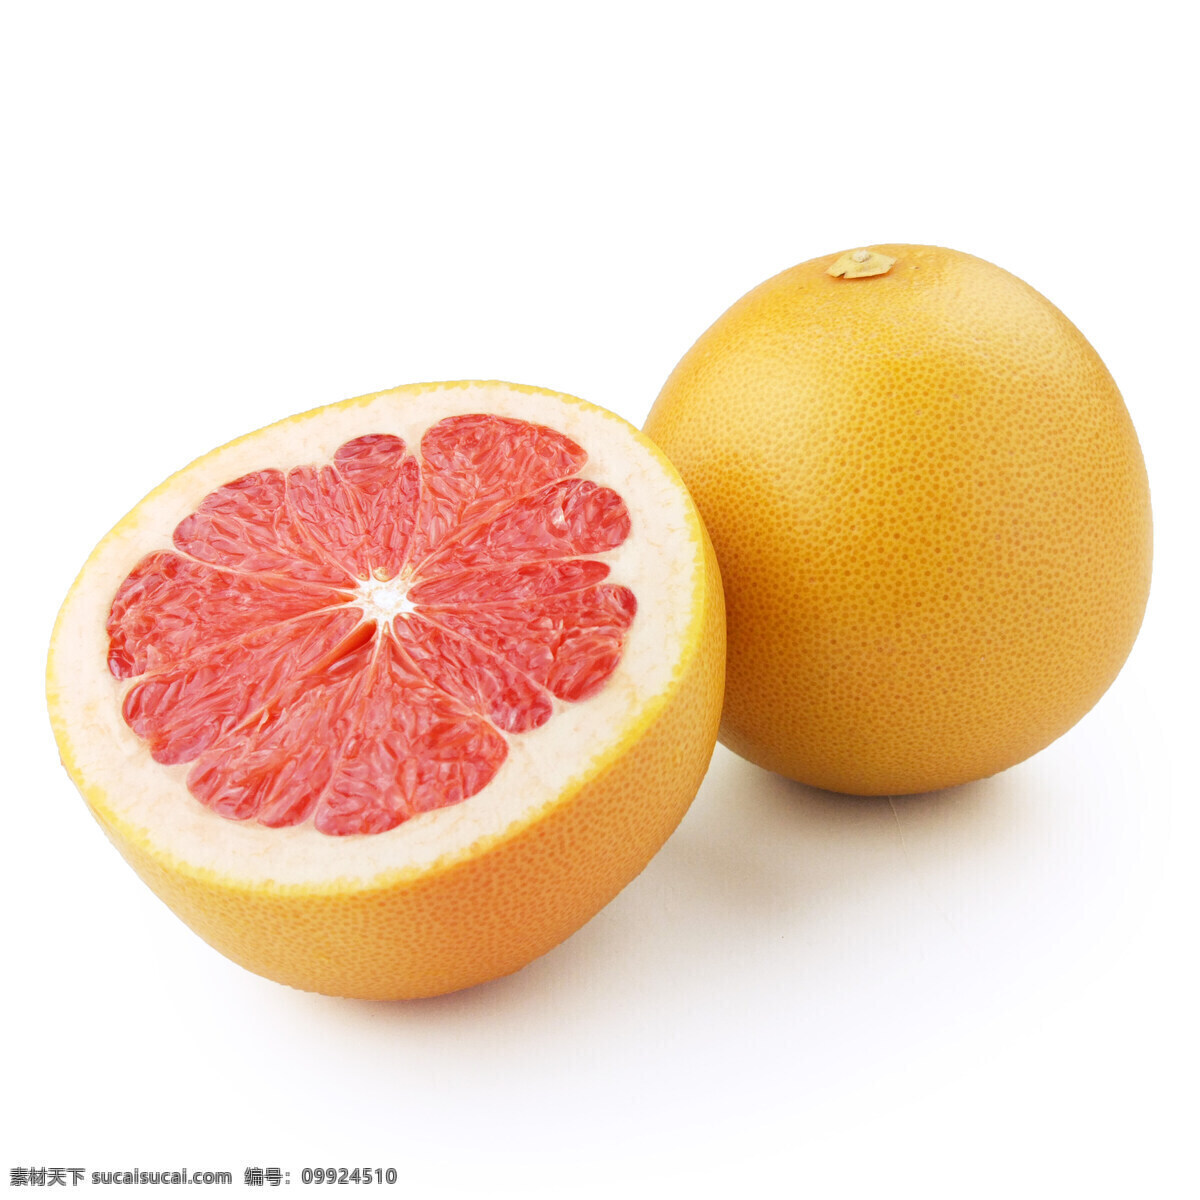 葡萄柚 红柚 蜜柚 柚子 柚 生物世界 水果